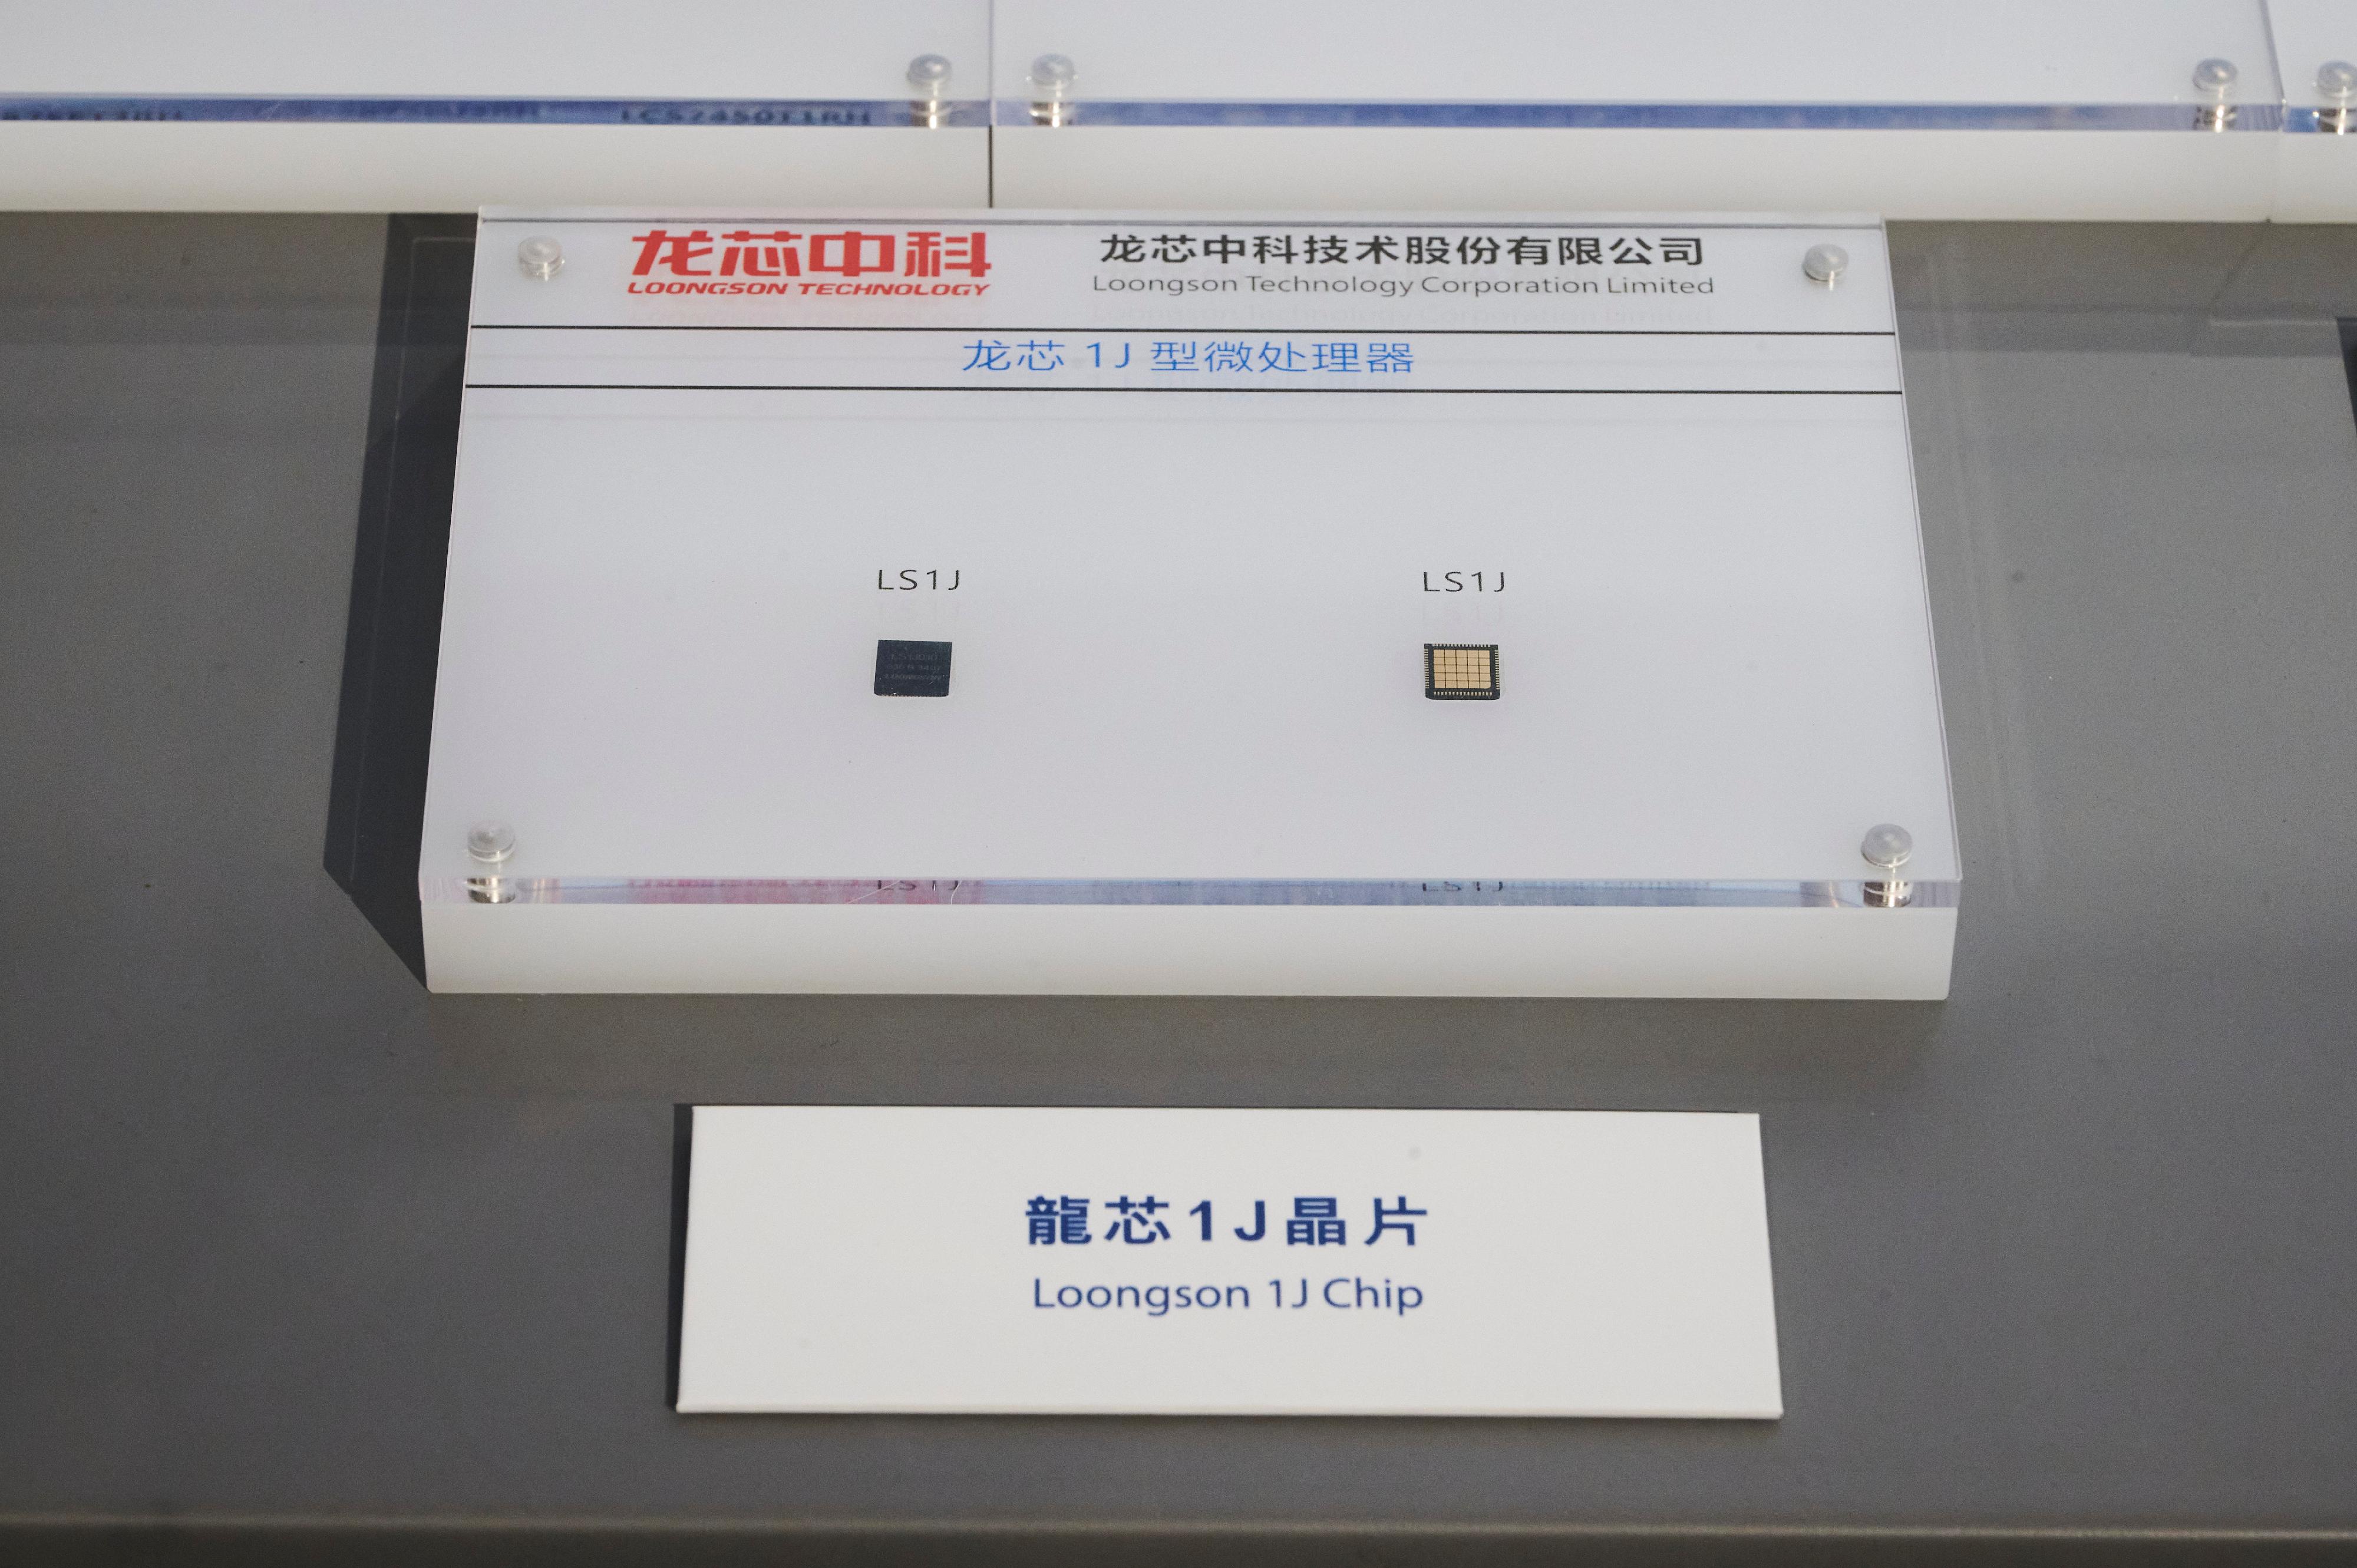 中国载人航天工程展明日（十二月一日）起至明年二月十八日在香港科学馆和香港历史博物馆举行。图示广泛应用于航天工程任务的国产龙芯1J晶片。
